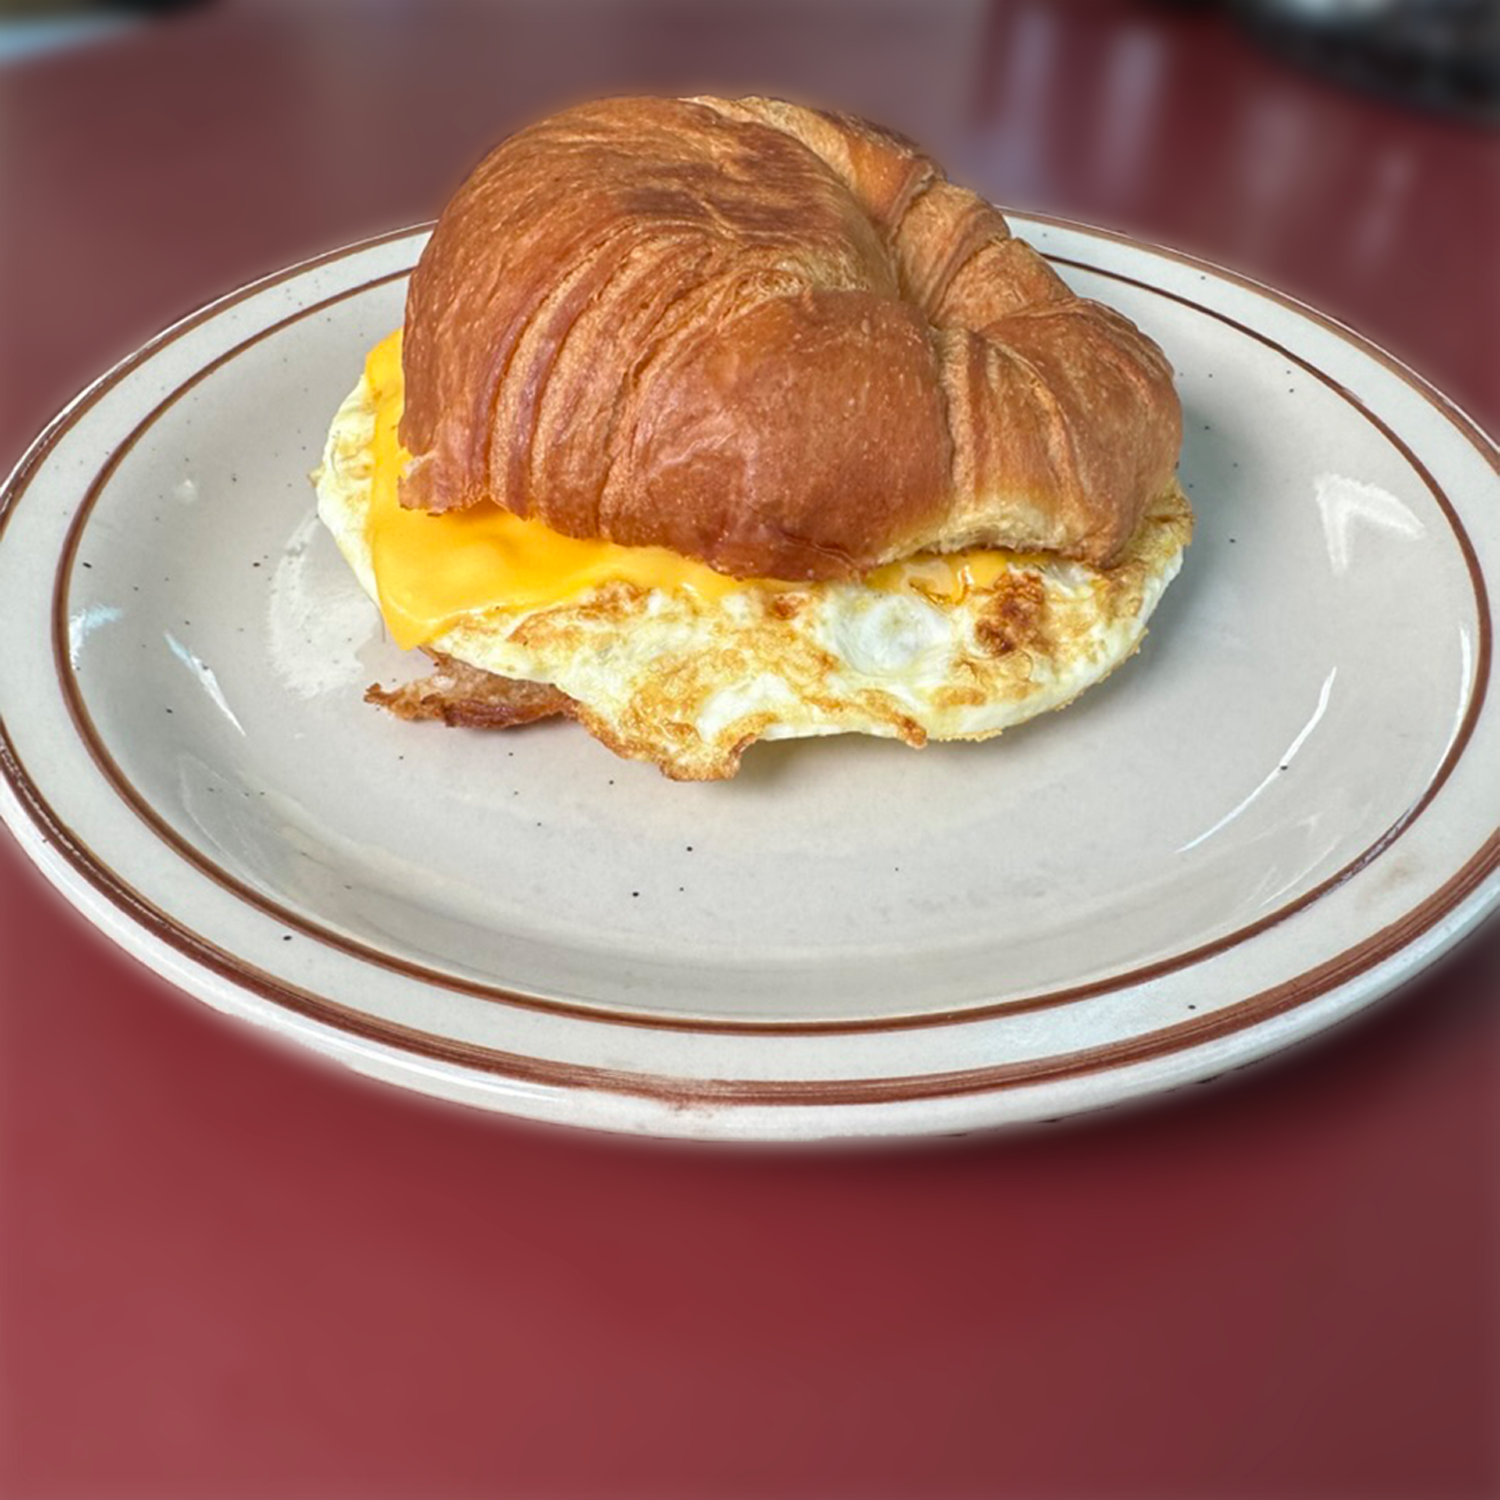 2 Fried Egg Sandwich